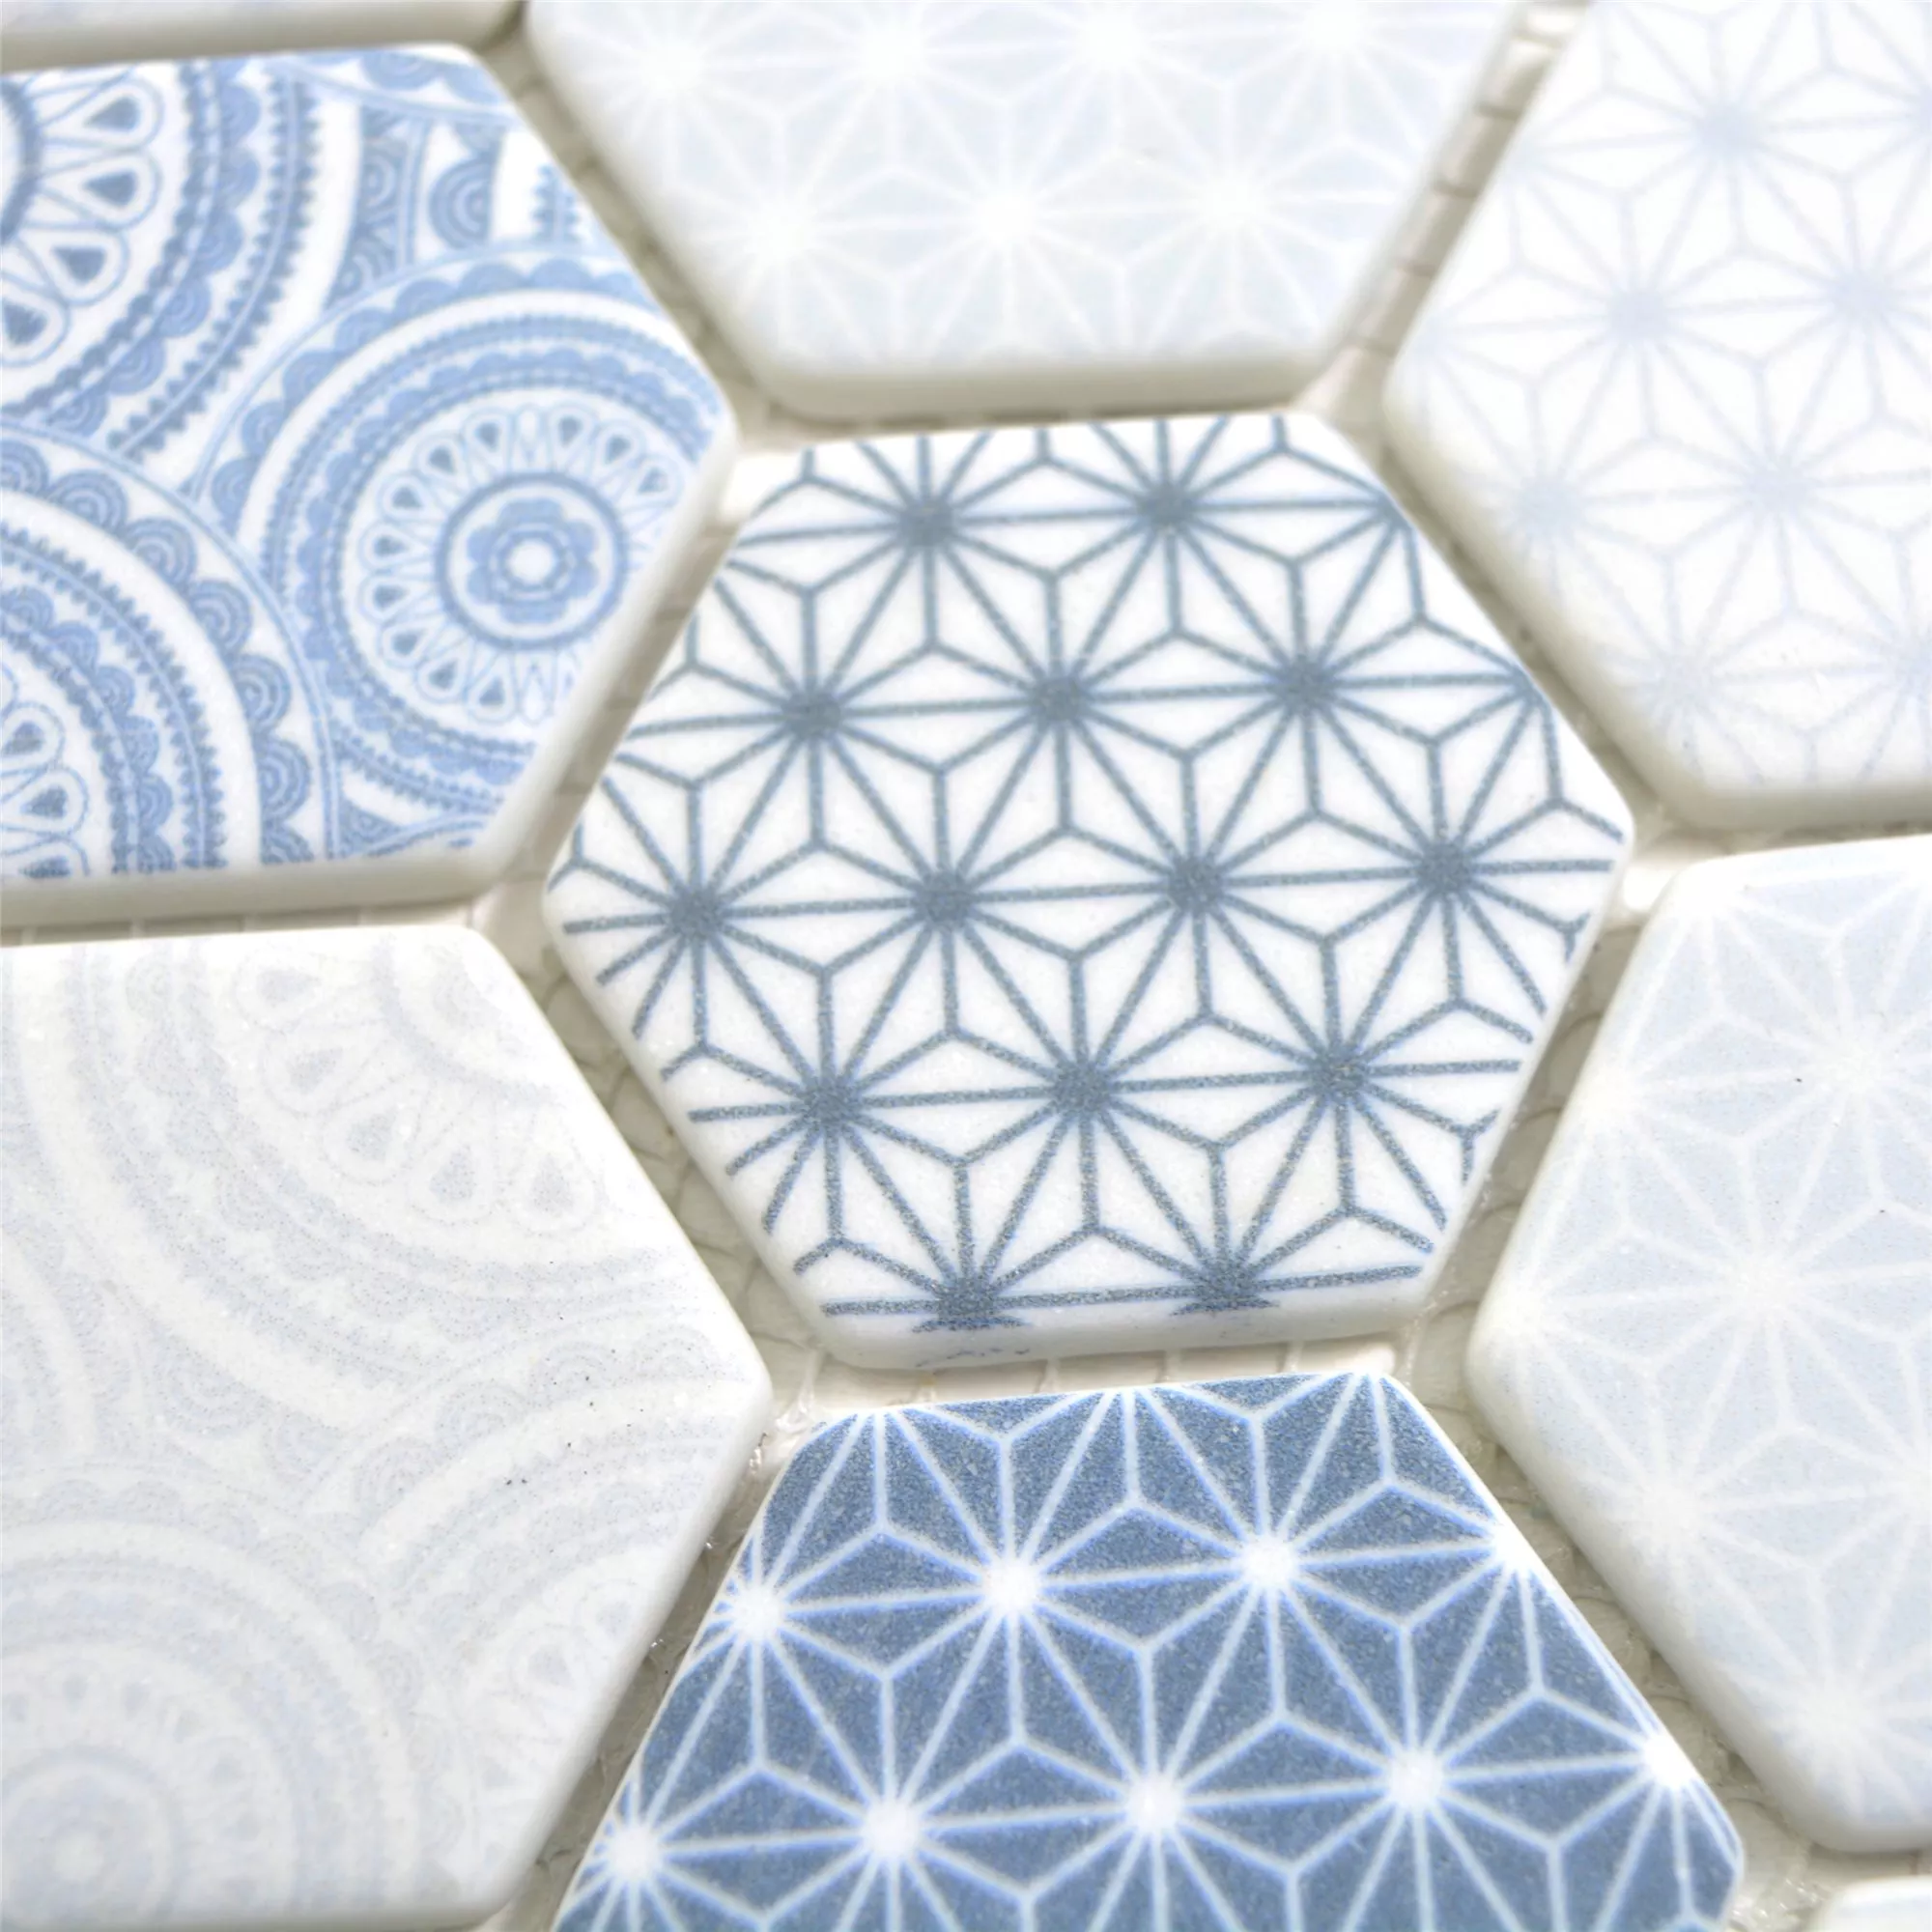 Sample Glass Mosaic Tiles Acapella Light Blue Hexagon